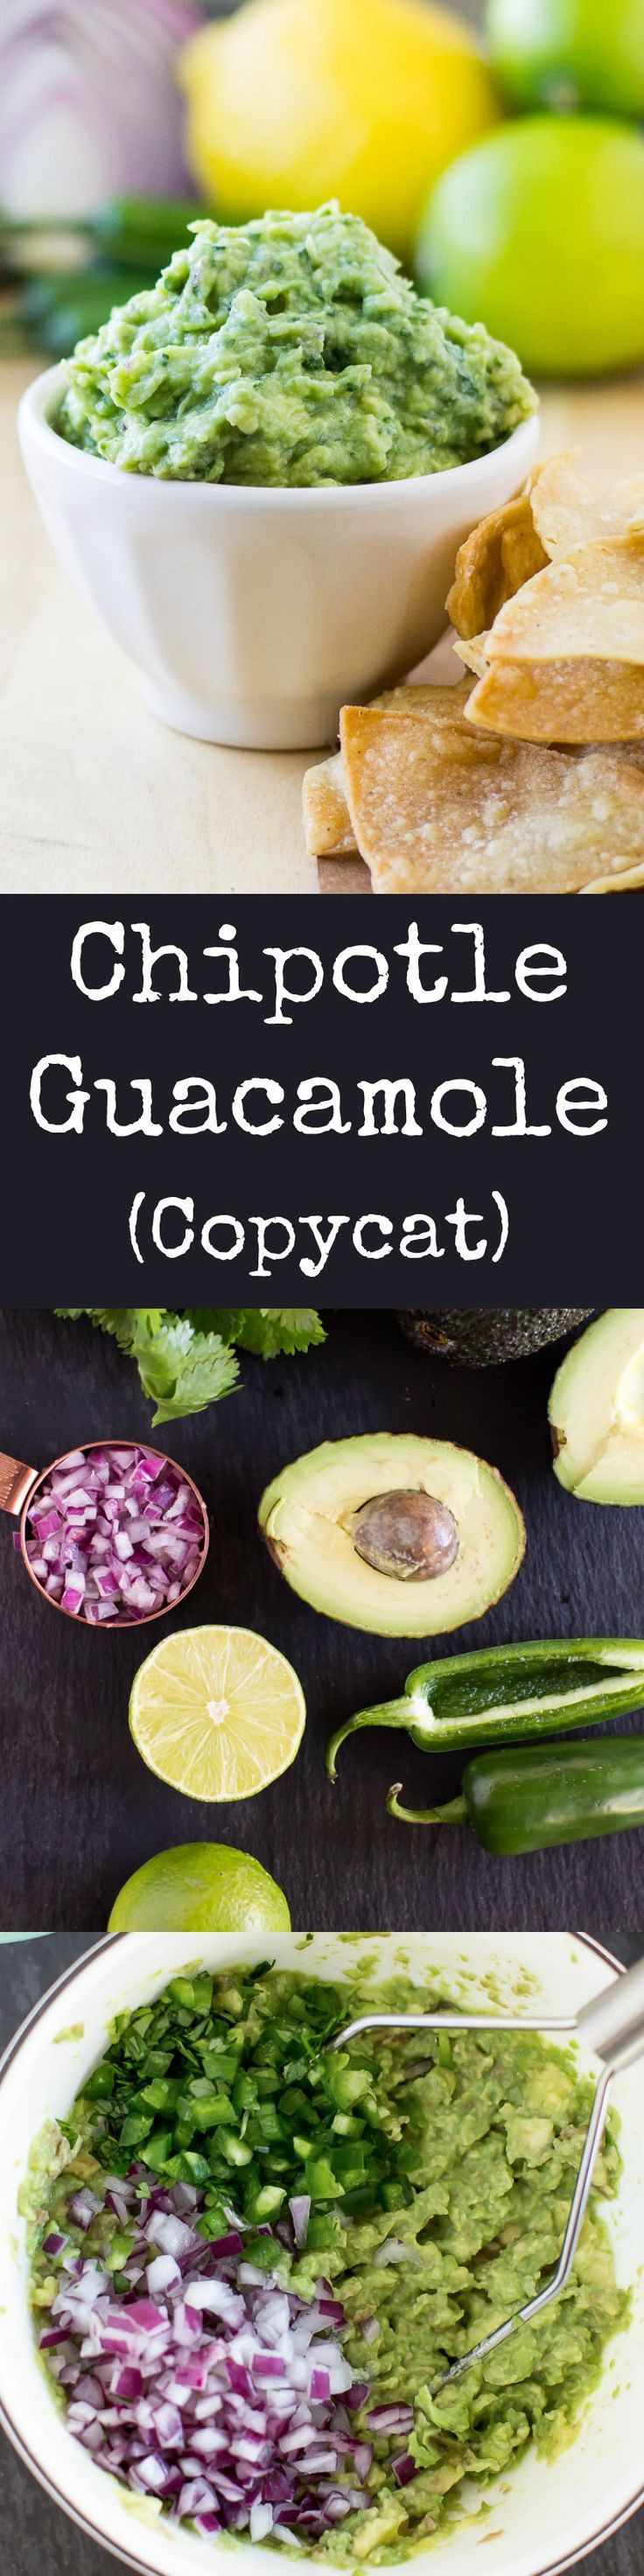 Is Chipotle Guacamole Healthy
 Healthy Recipes This Chipotle Guacamole recipe is the